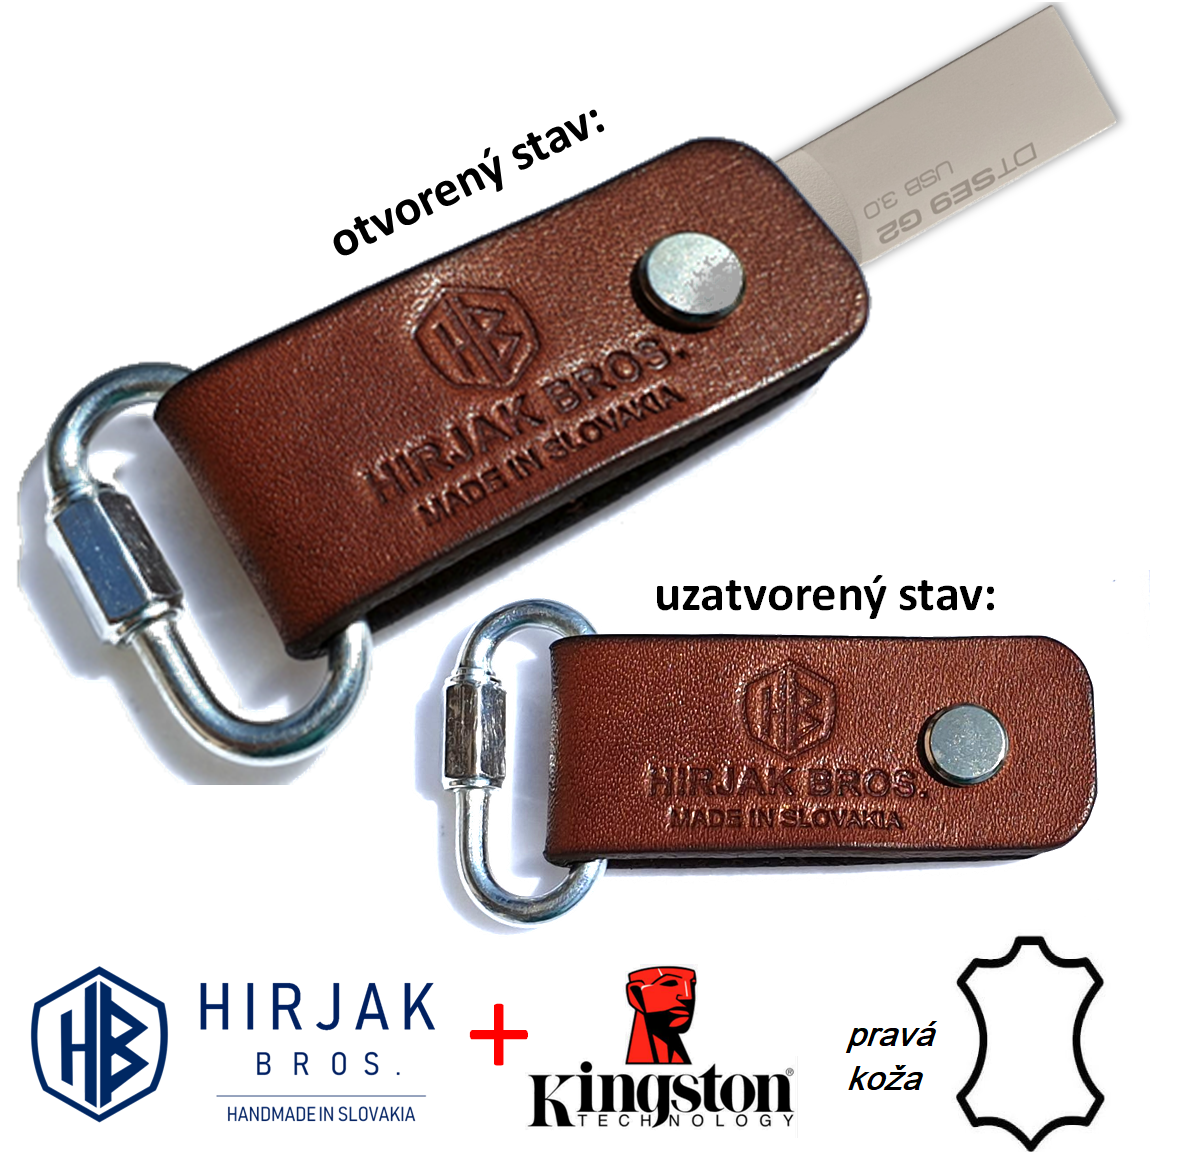 HB kožený USB-kľúč - (svetlá-hnedá) s možnosťou upevnenia na kľúče - 64GB